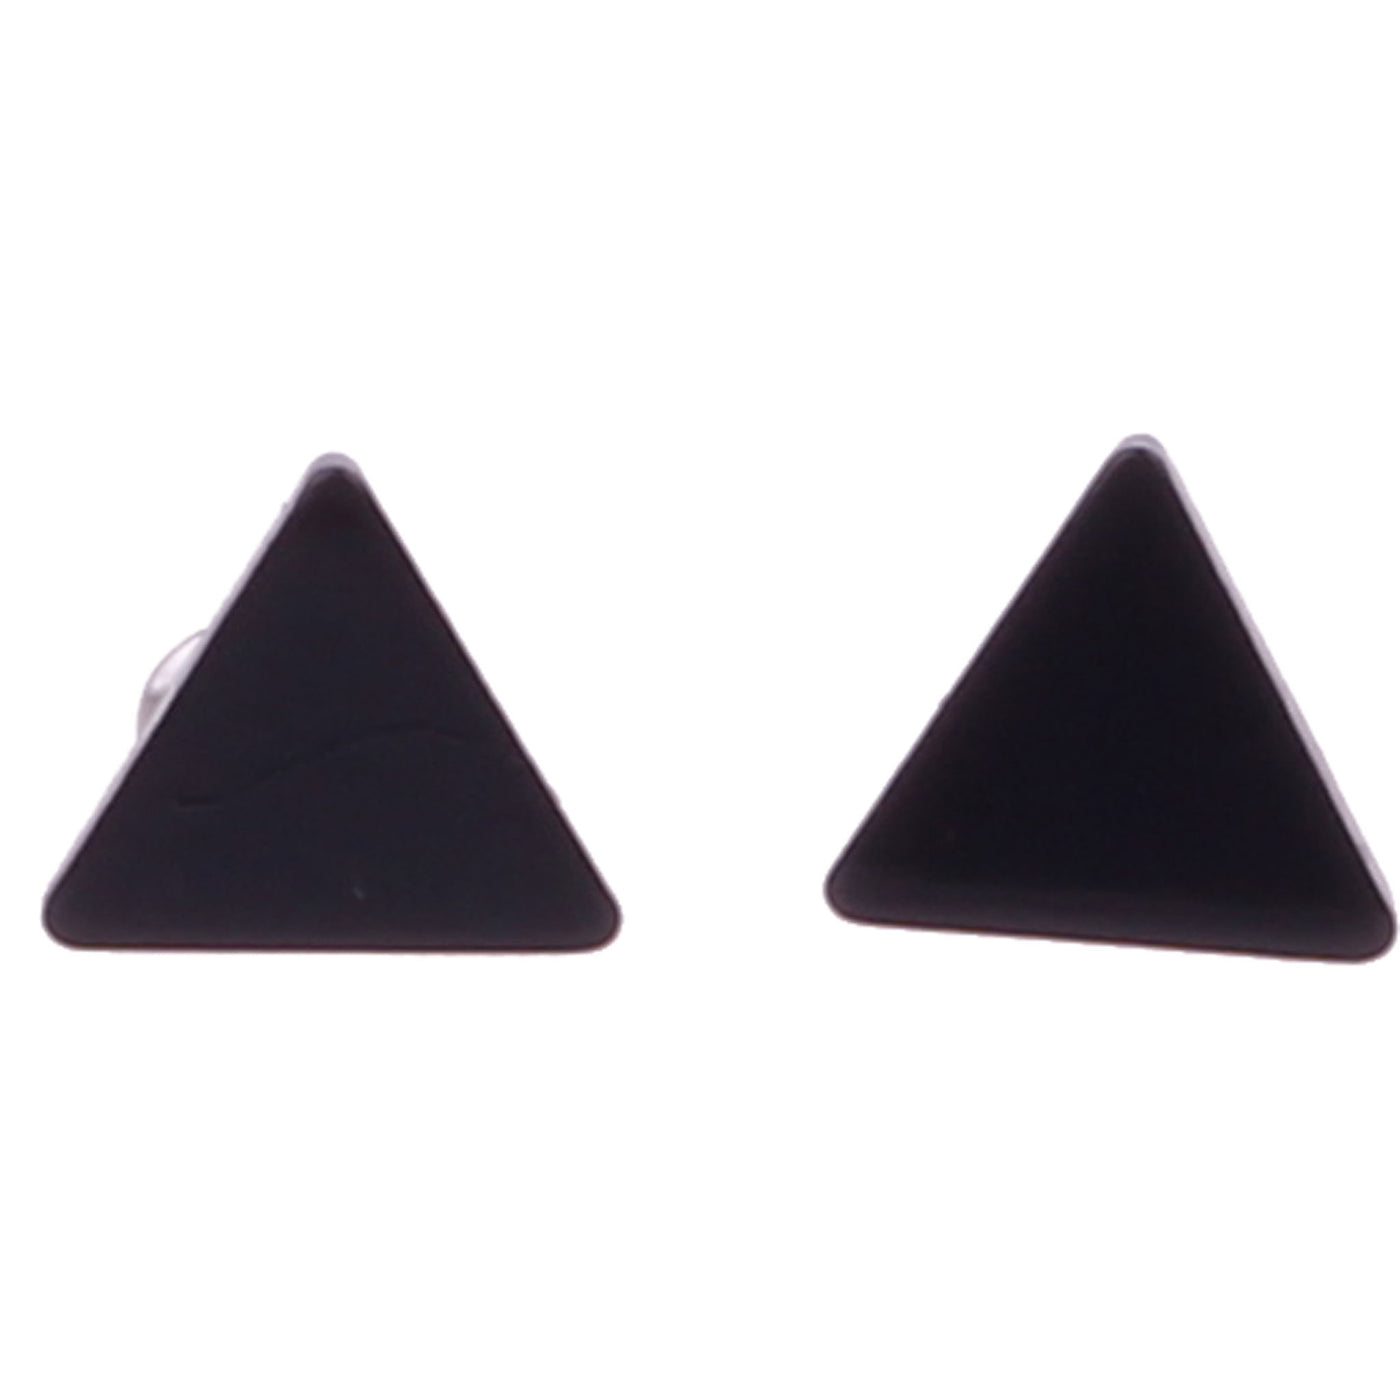 Steel triangle earrings 7mm